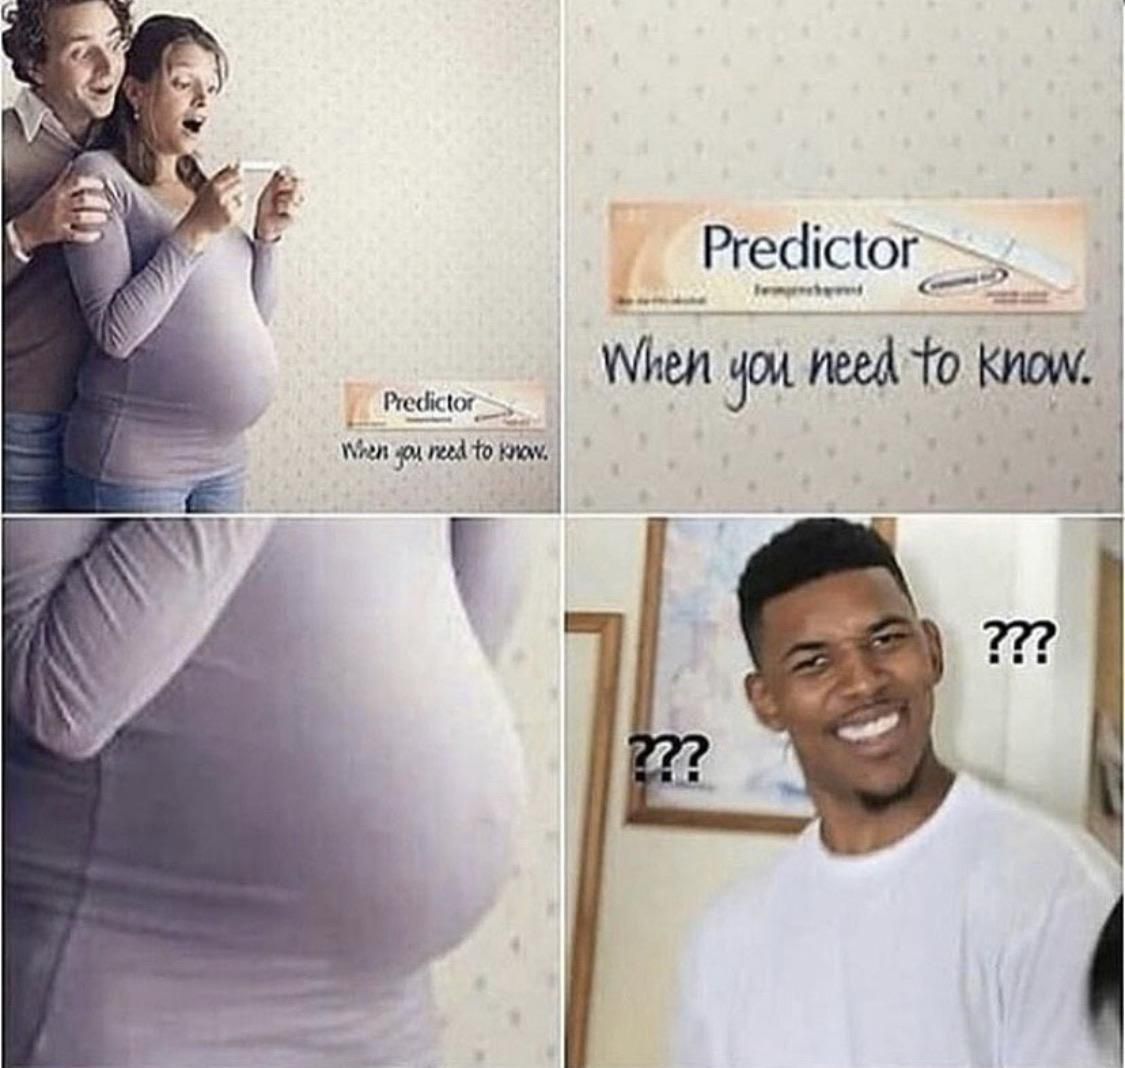 I’m pregnant!